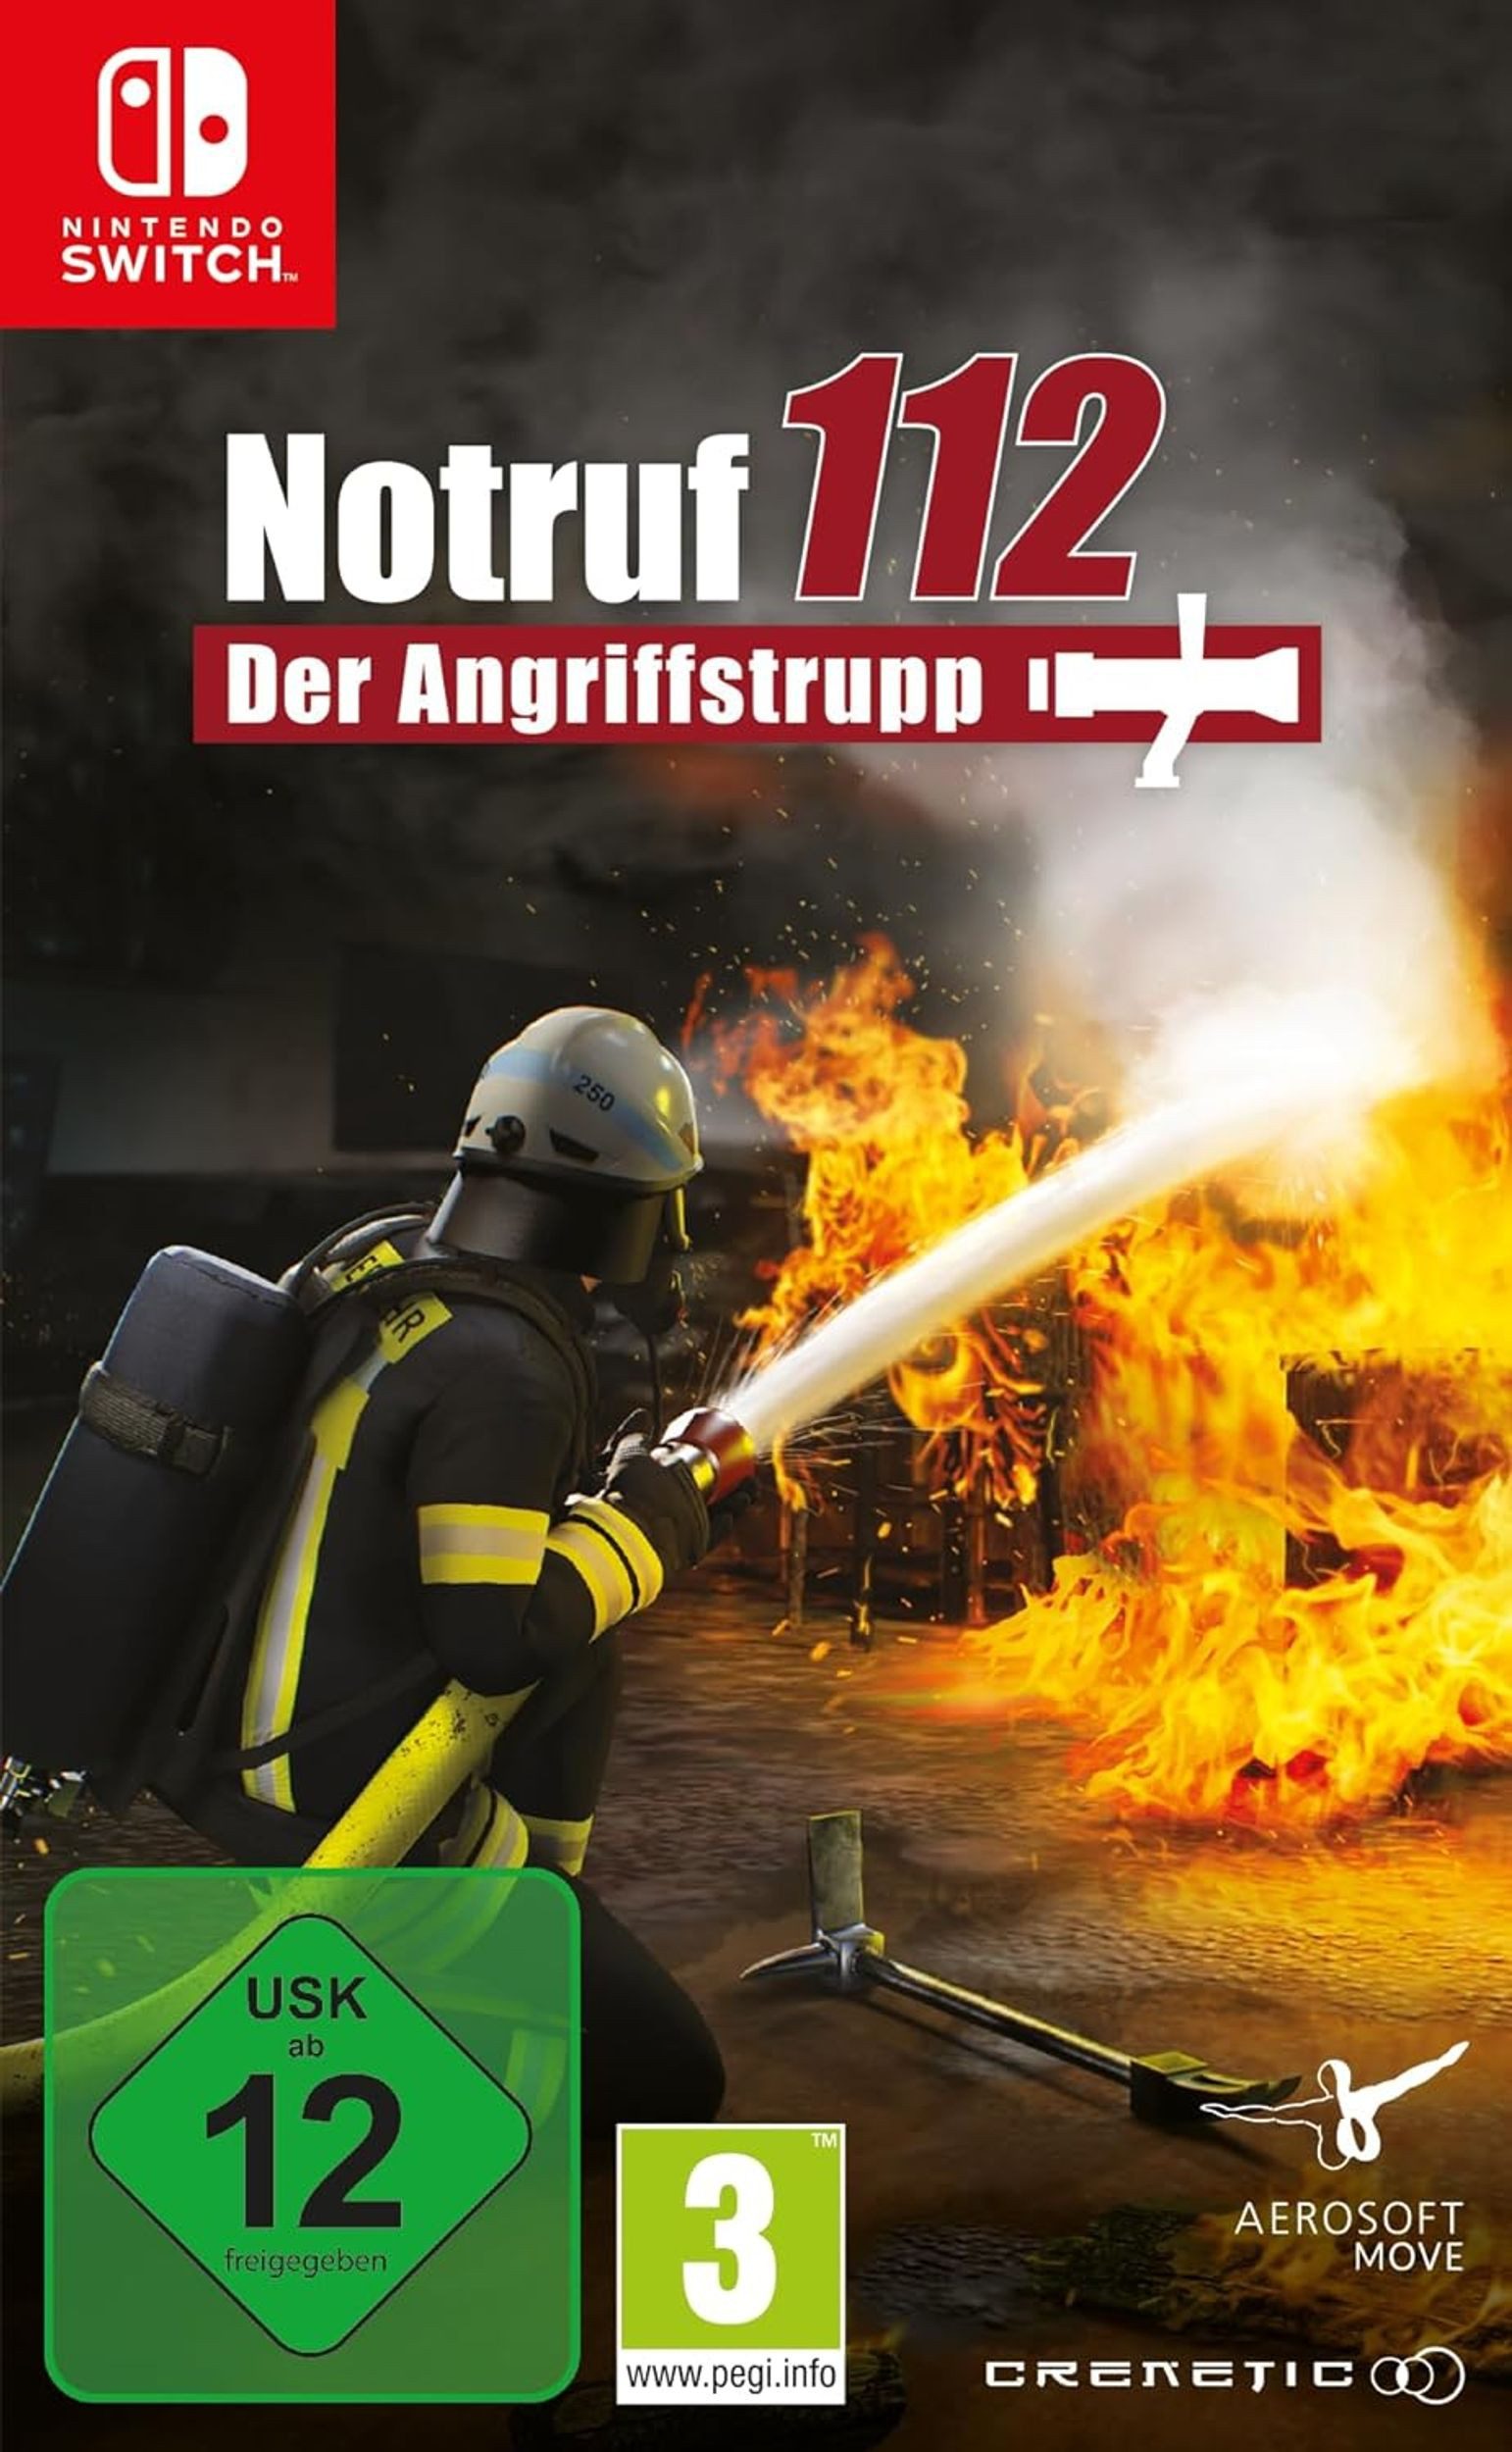 Notruff 112 - Der Angriffstrupp Nintendo Switch